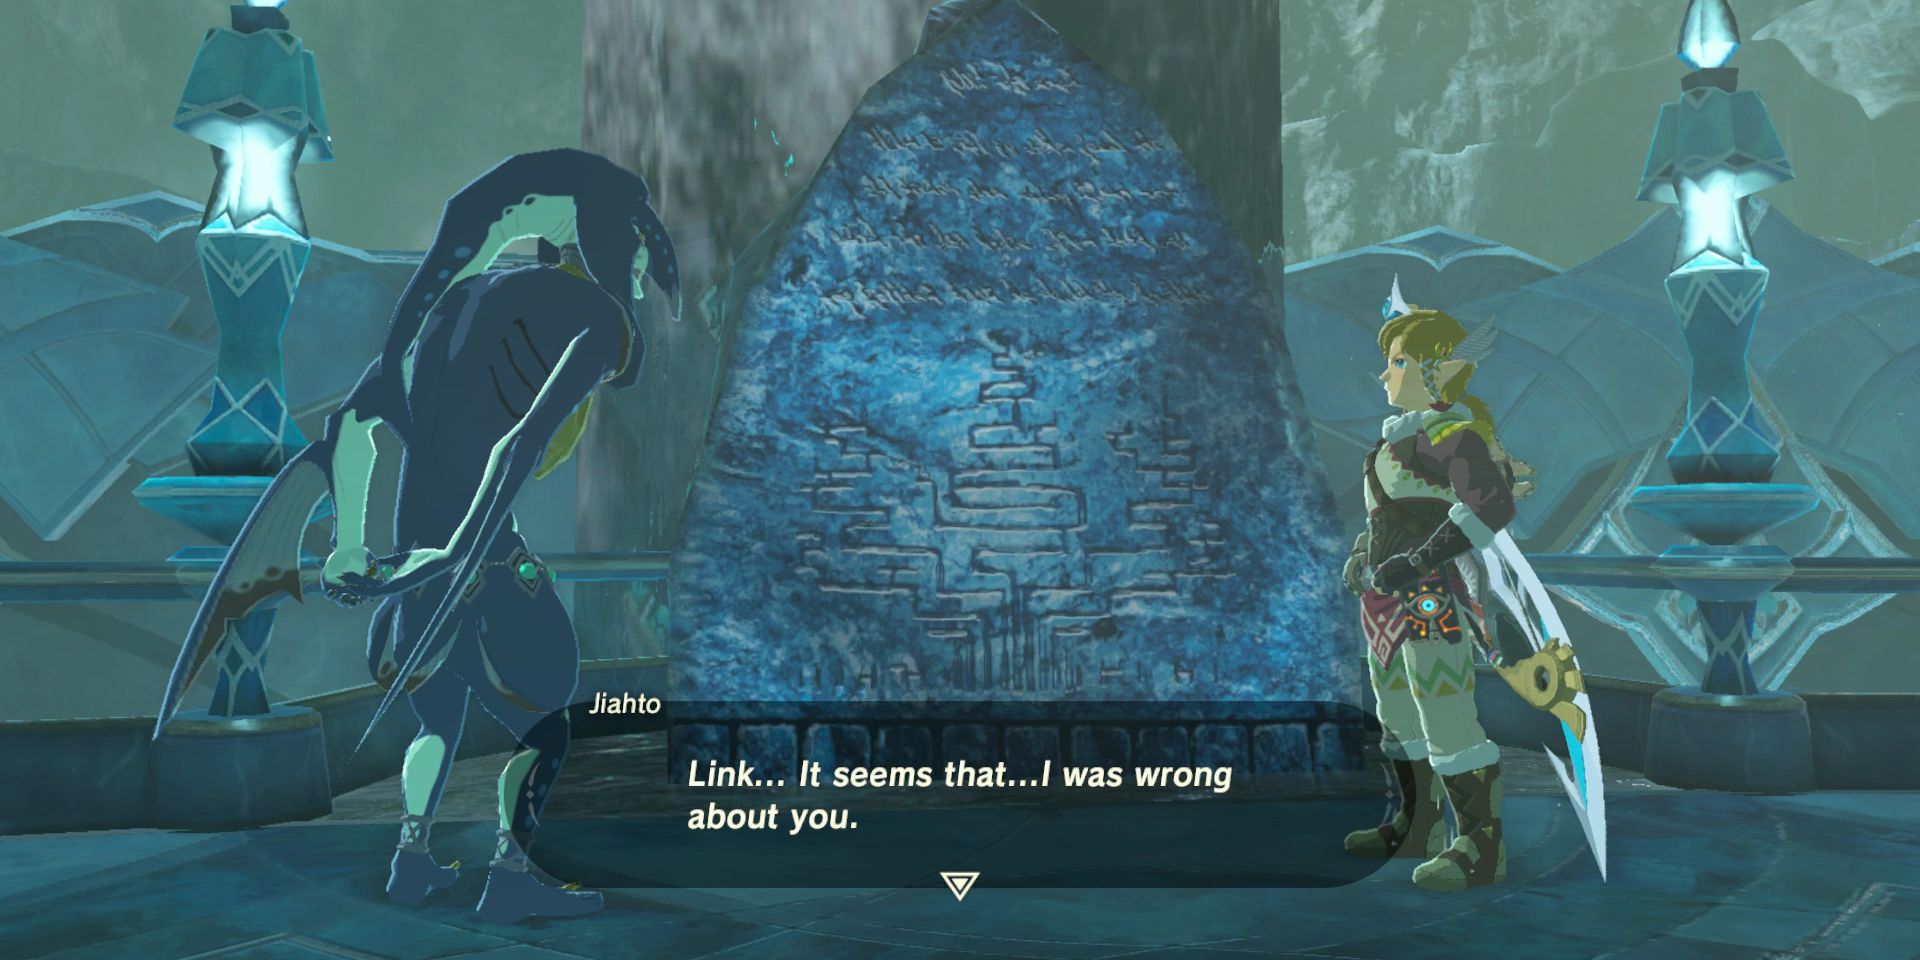 Link dan Jiahto bercakap-cakap di depan monumen batu berukir kuno di Domain Zora.  Jiahto mengatakan, 